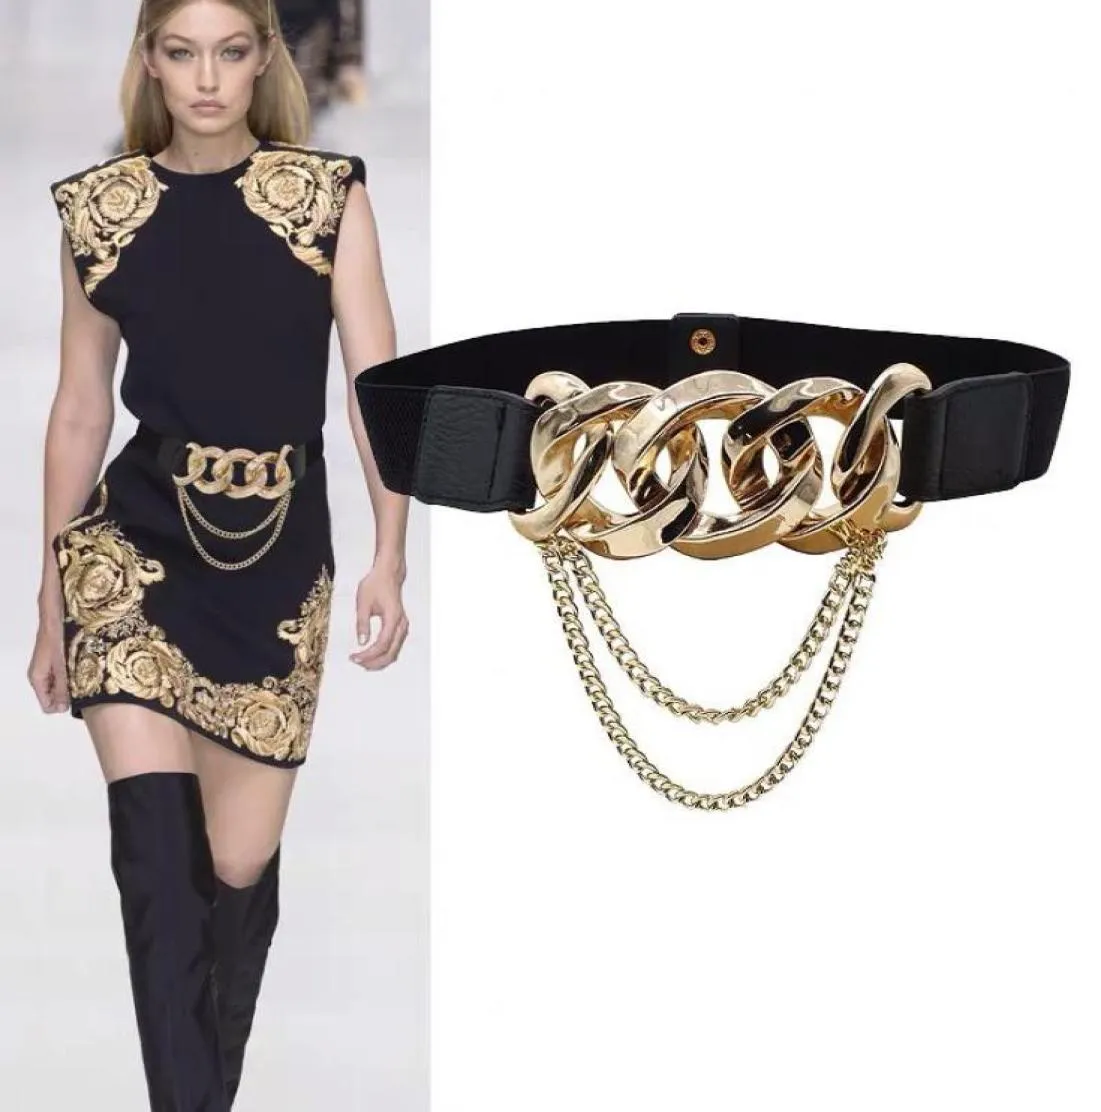 Bälten Elastic Gold Chain Belt Tassel Metal Stretch Cummerbunds Plus Size Corset For Women Dress Waistband Leather Ceinture Femme6214292